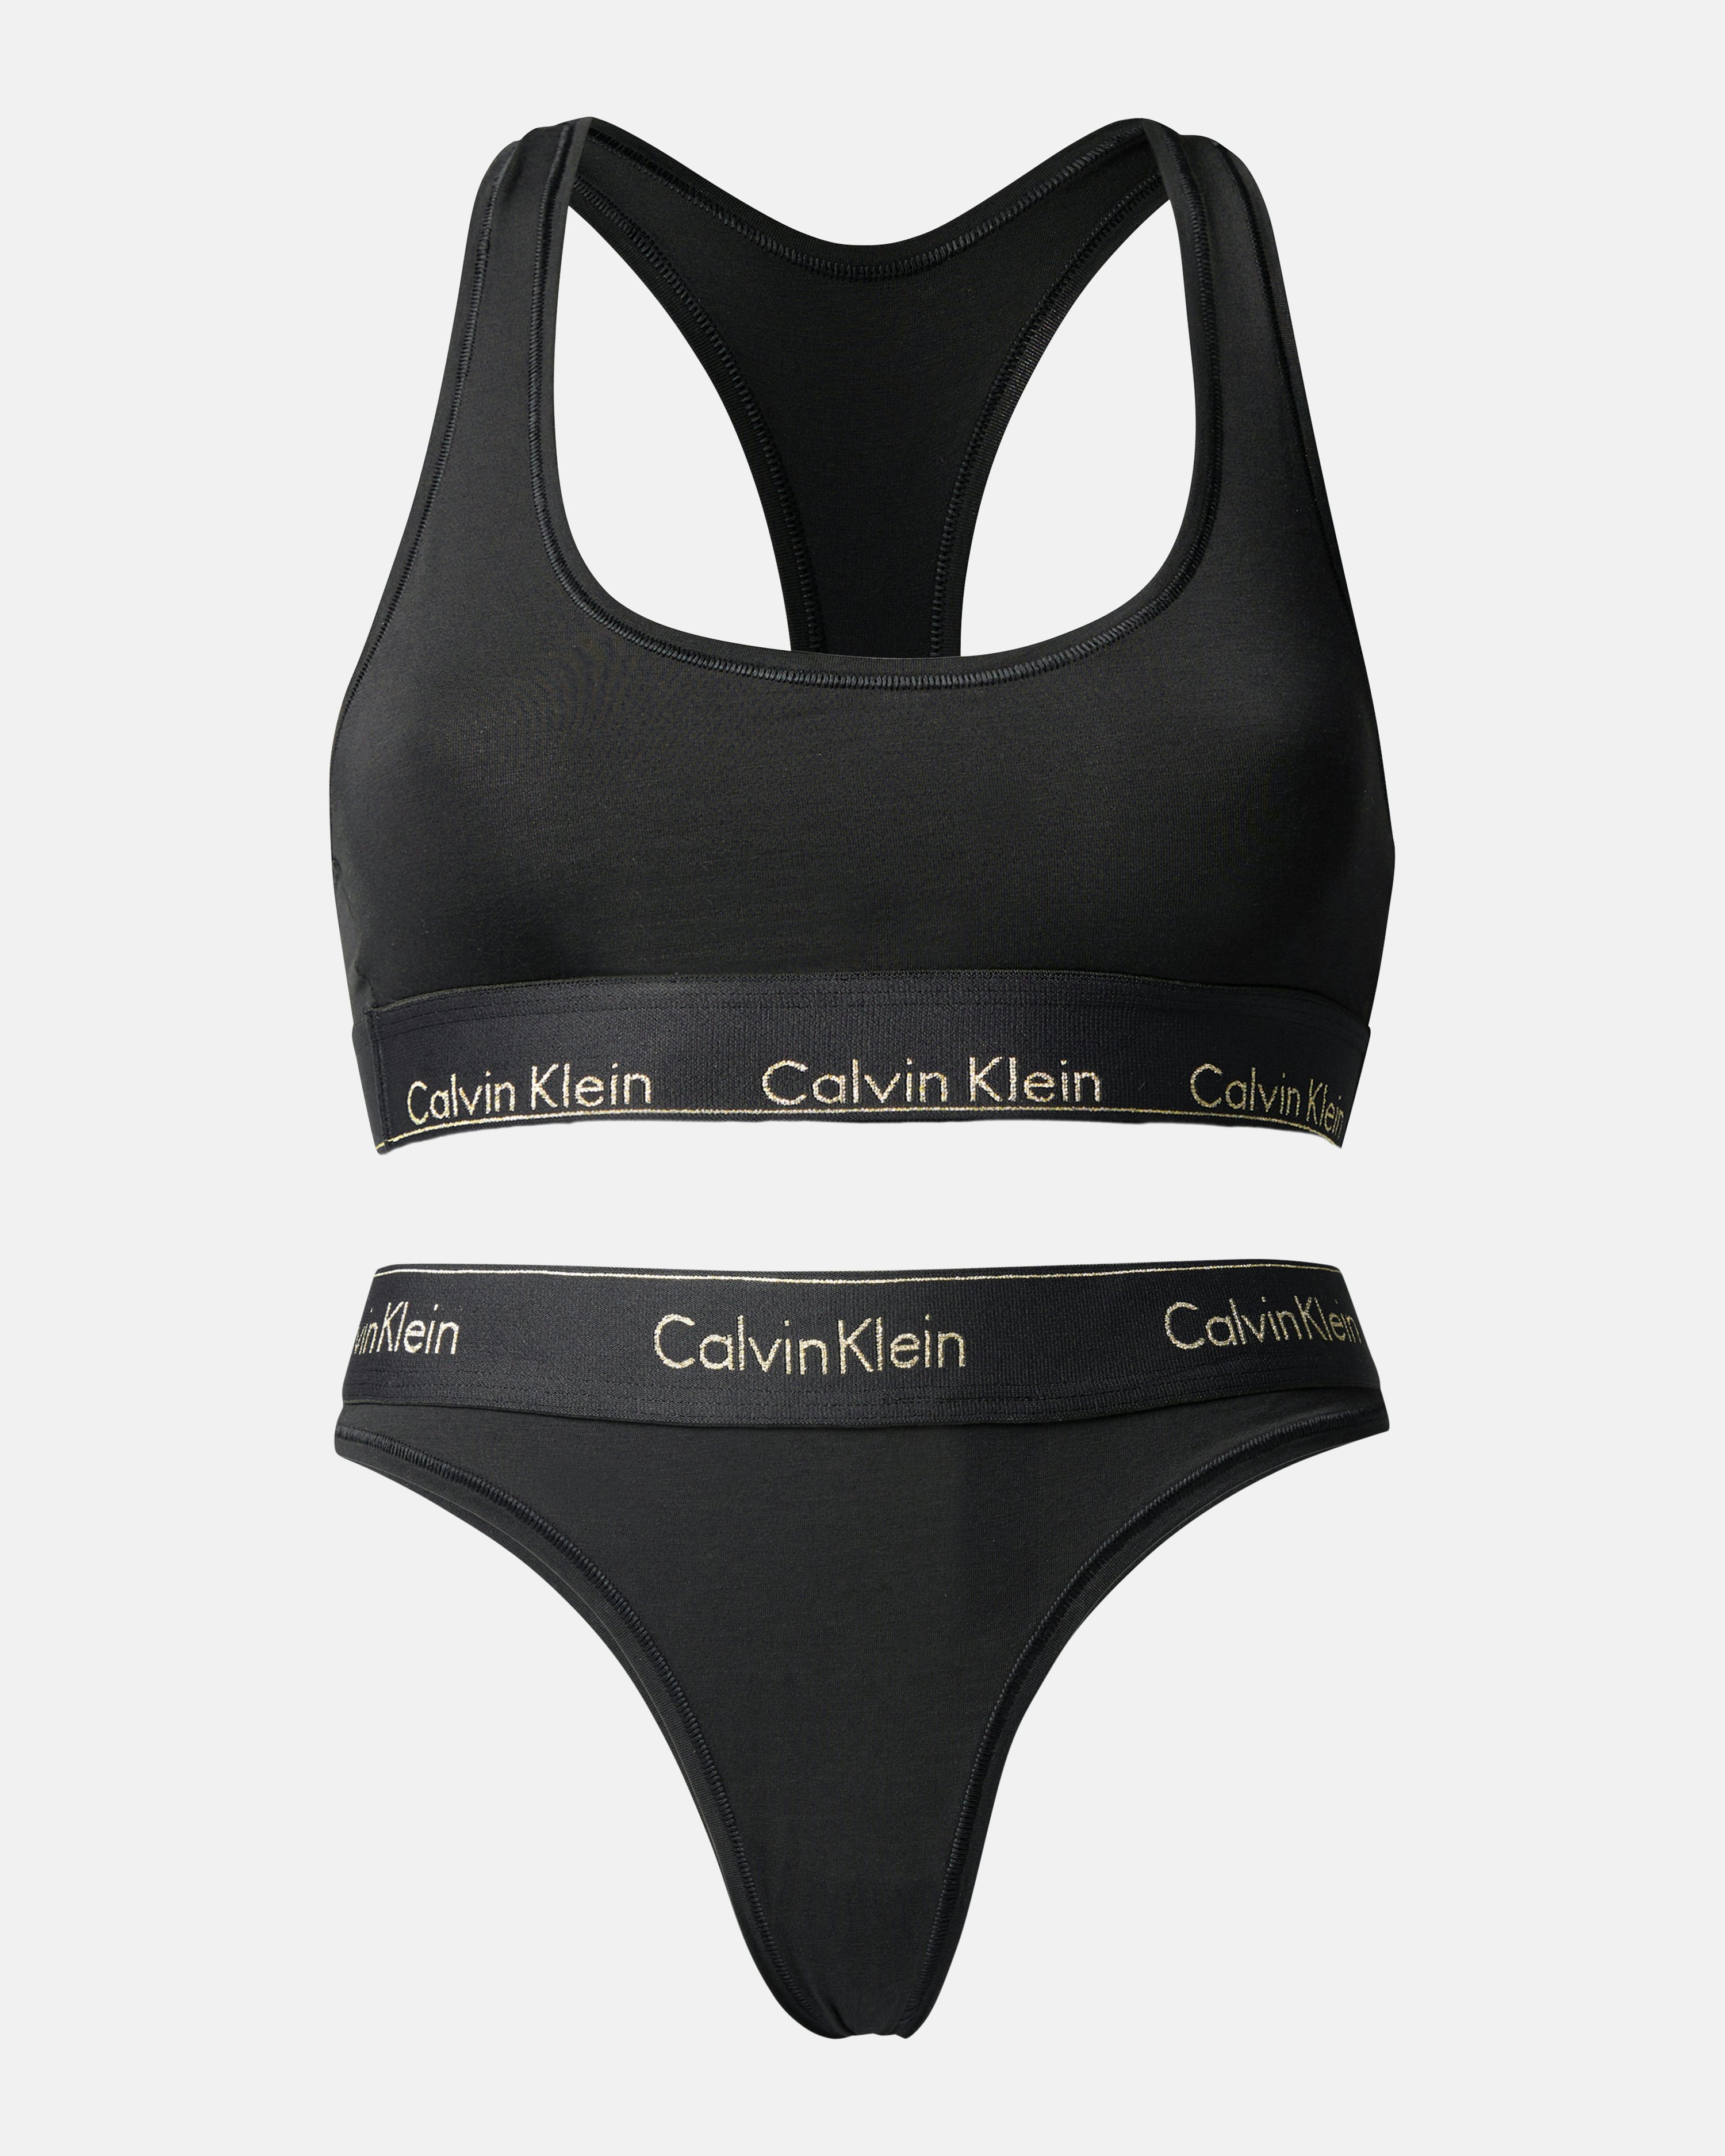 Calvin Klein Underwear Bralette And Thong Set Black, Women